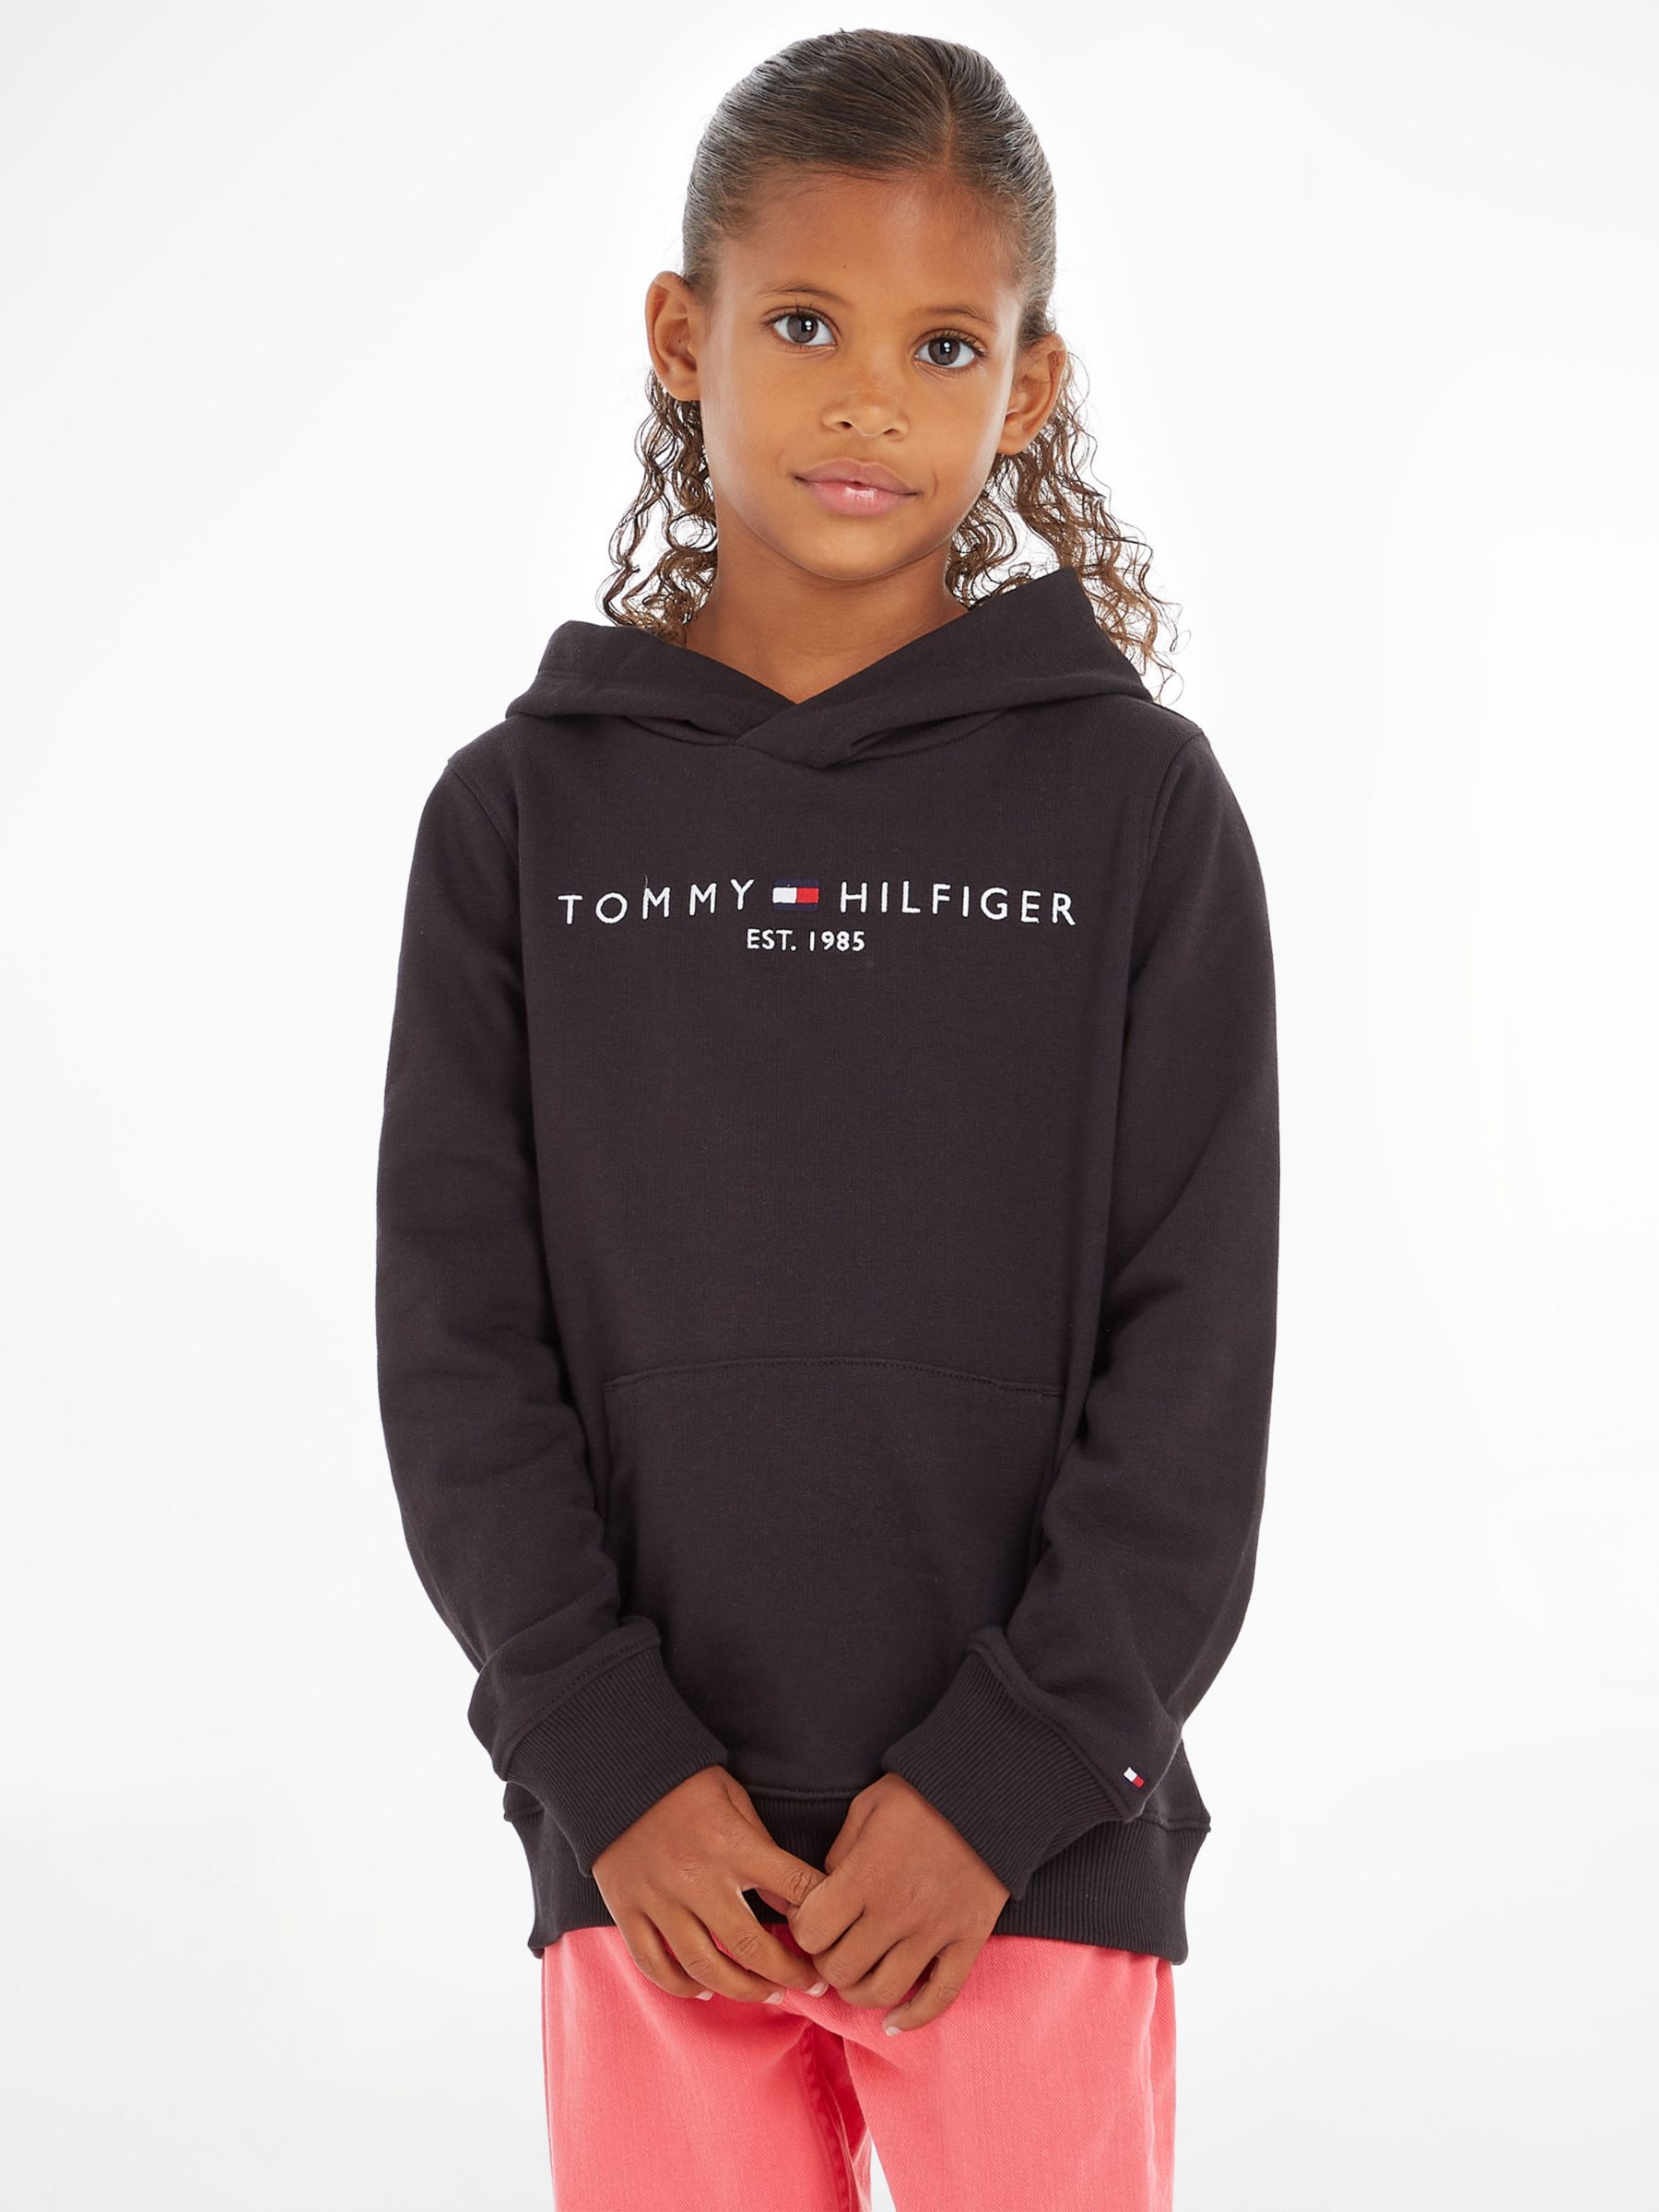 Детский пуловер с капюшоном Essential Tommy Hilfiger, черный